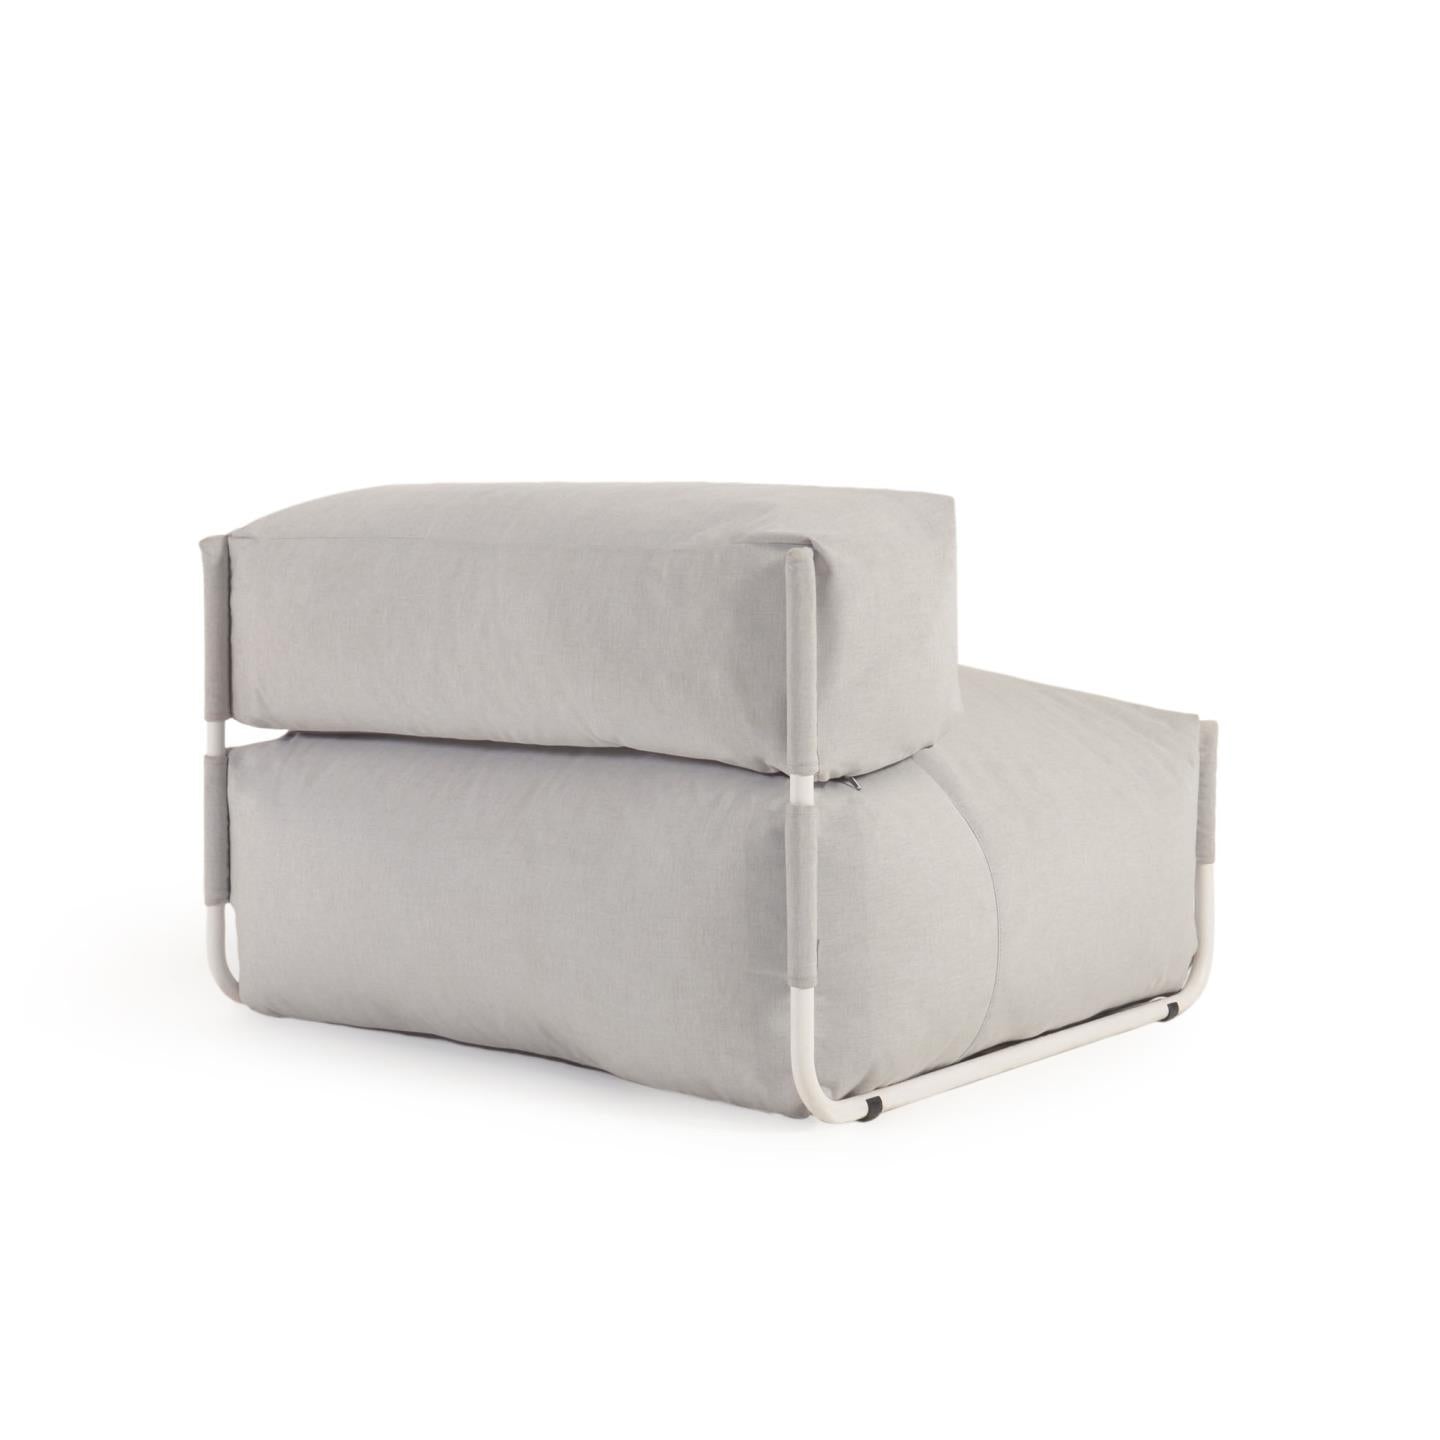 Square moduláris 100% kültéri kanapé puff háttámlával, világosszürke, fehér alumínium 101x101cm